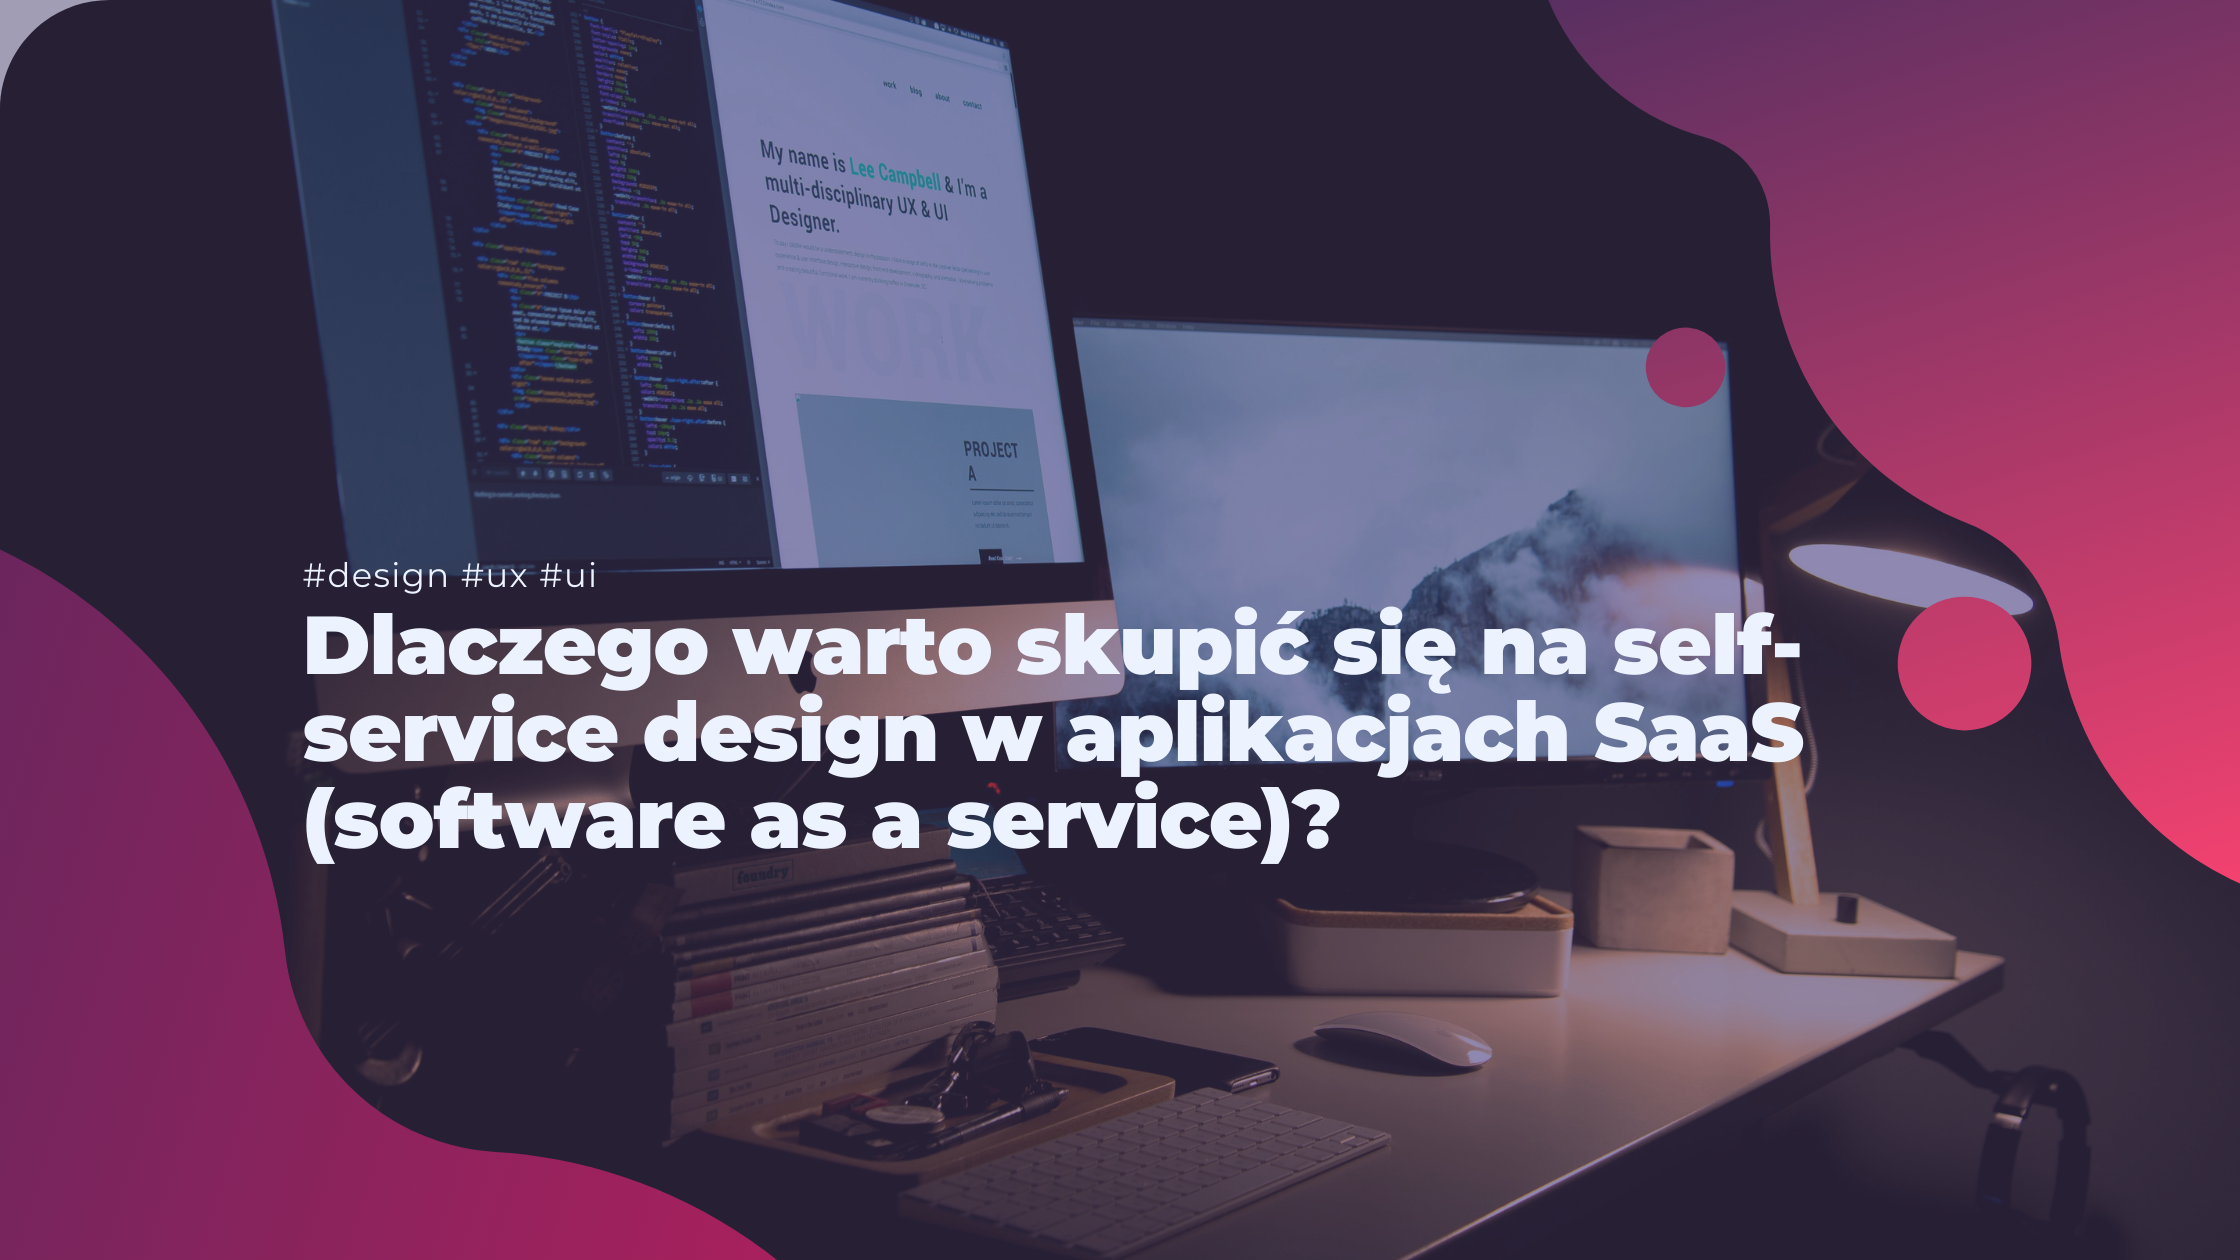 Dlaczego warto skupić się na self-service design w aplikacjach SaaS (software as a service)? 